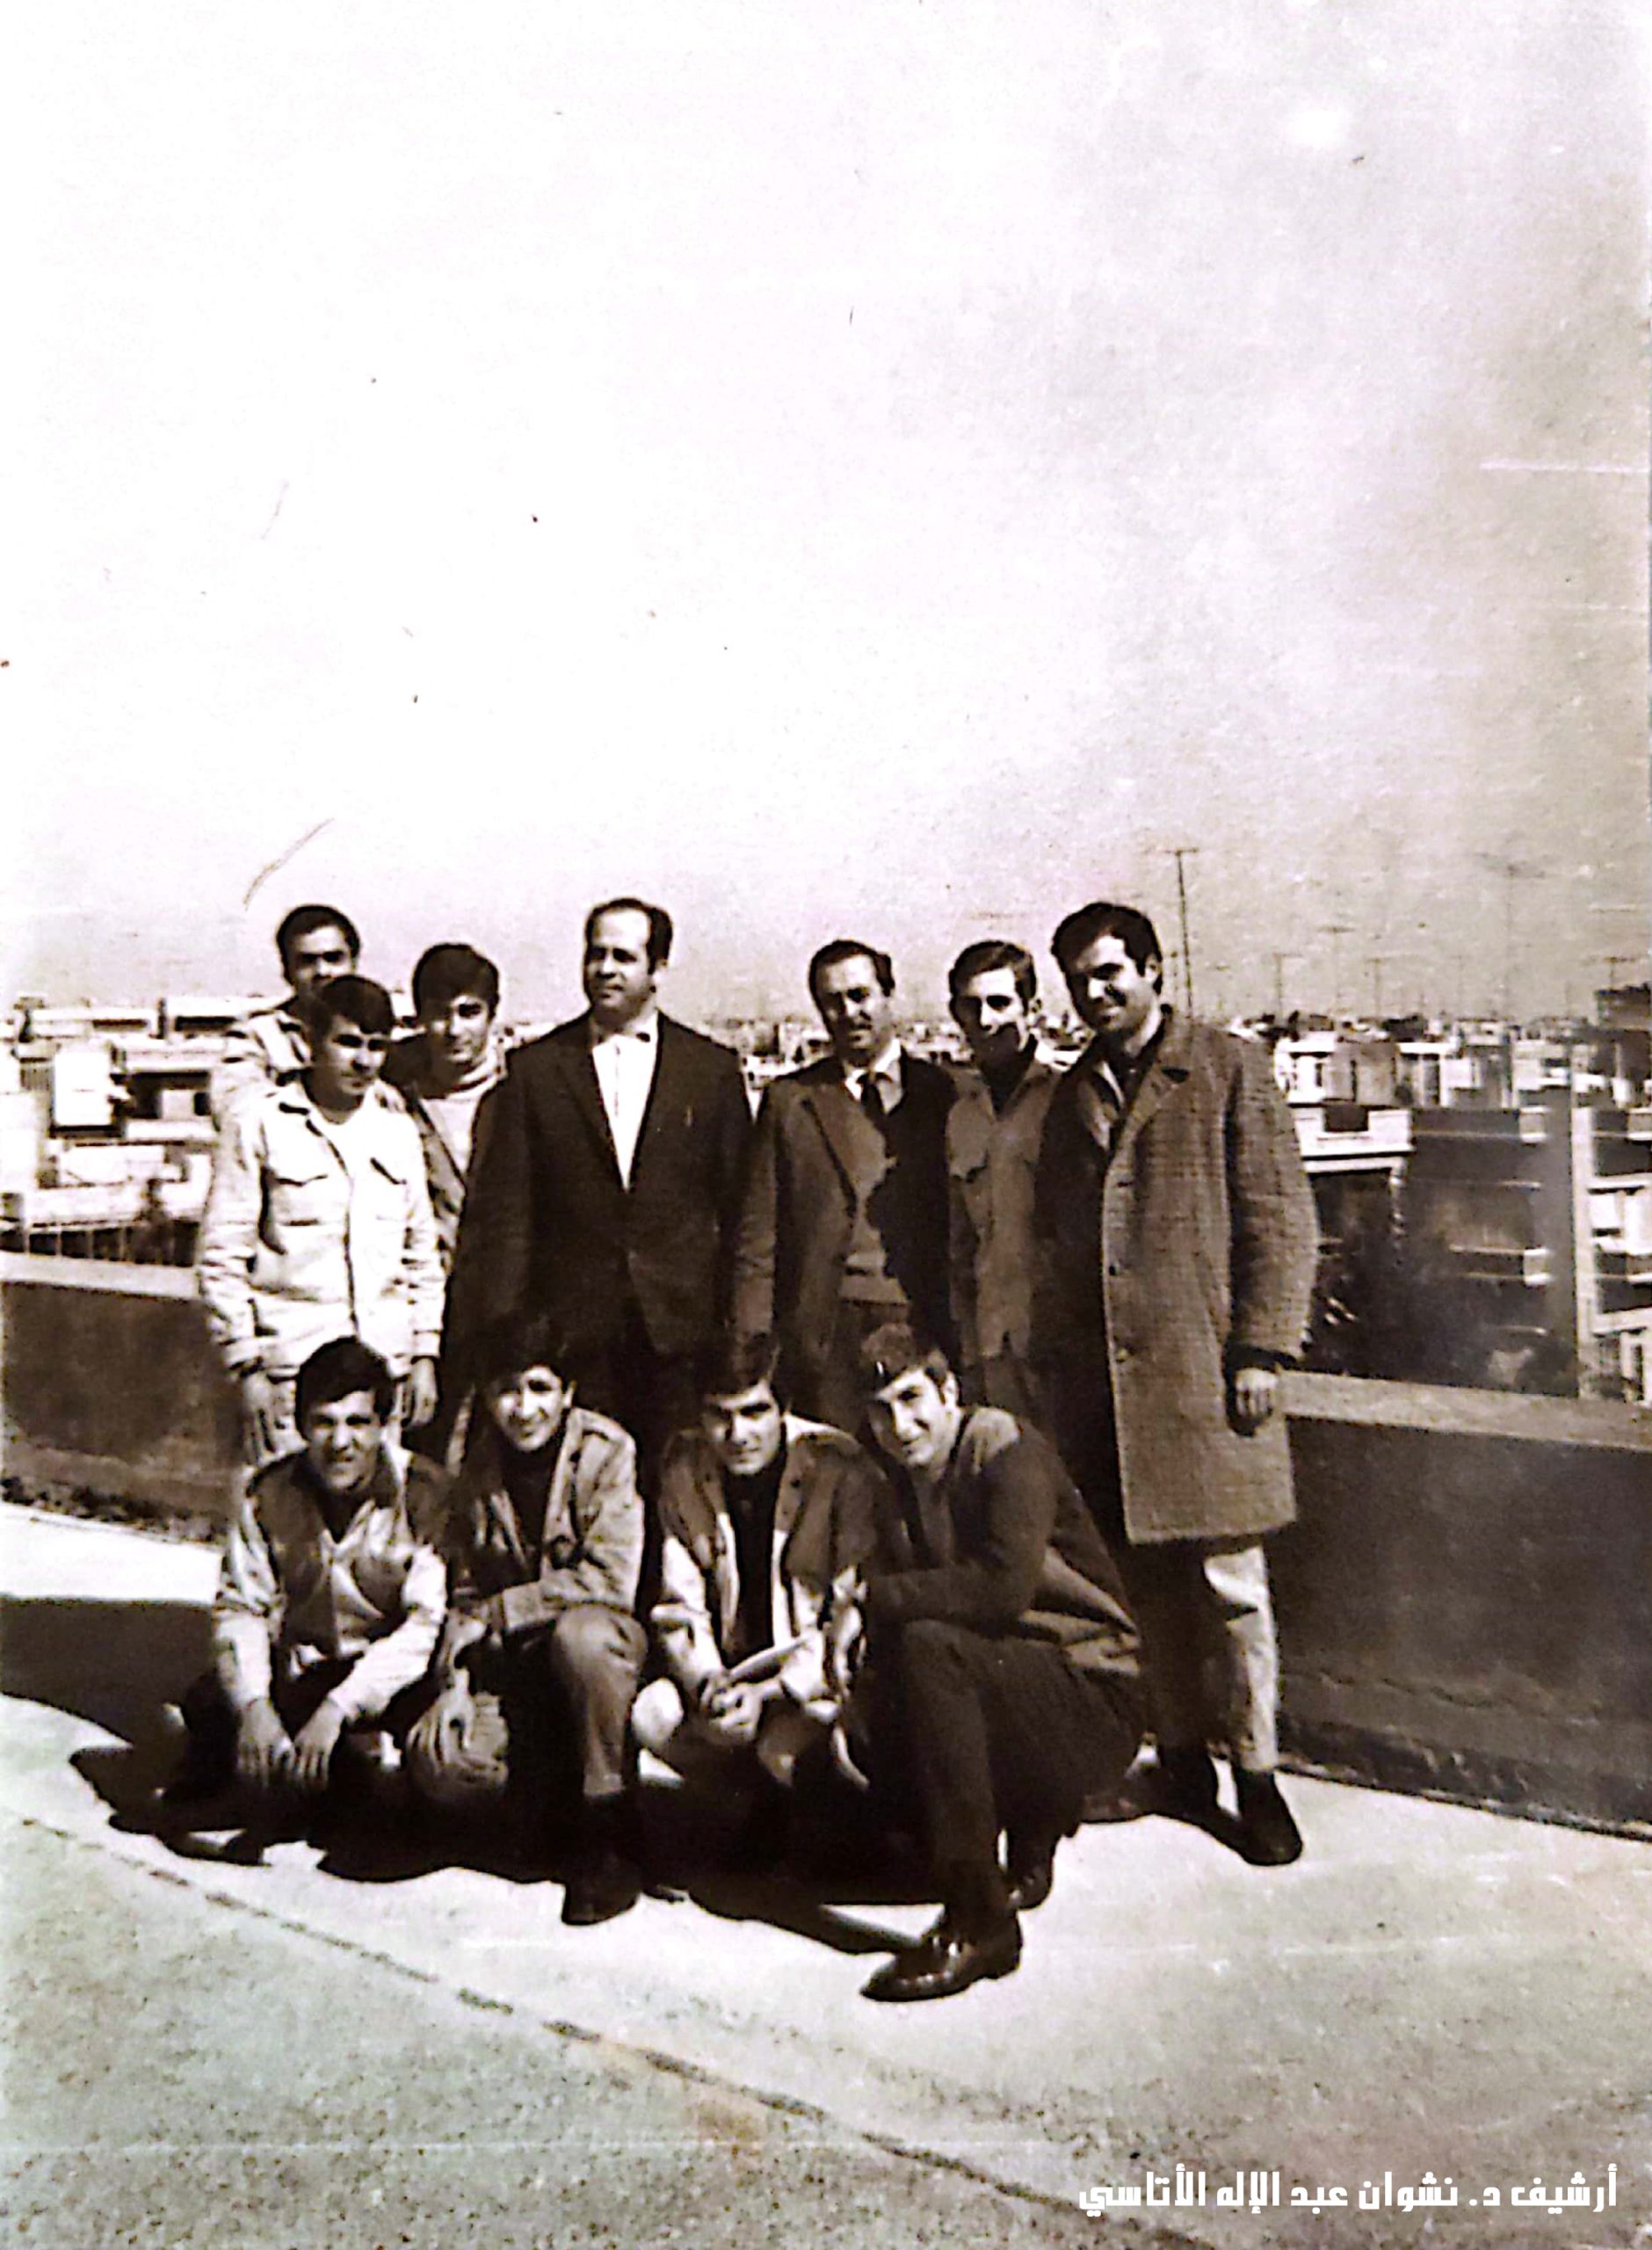 التاريخ السوري المعاصر - صورة جماعية على سطح مدرسة الزهراوي بحمص عام 1971